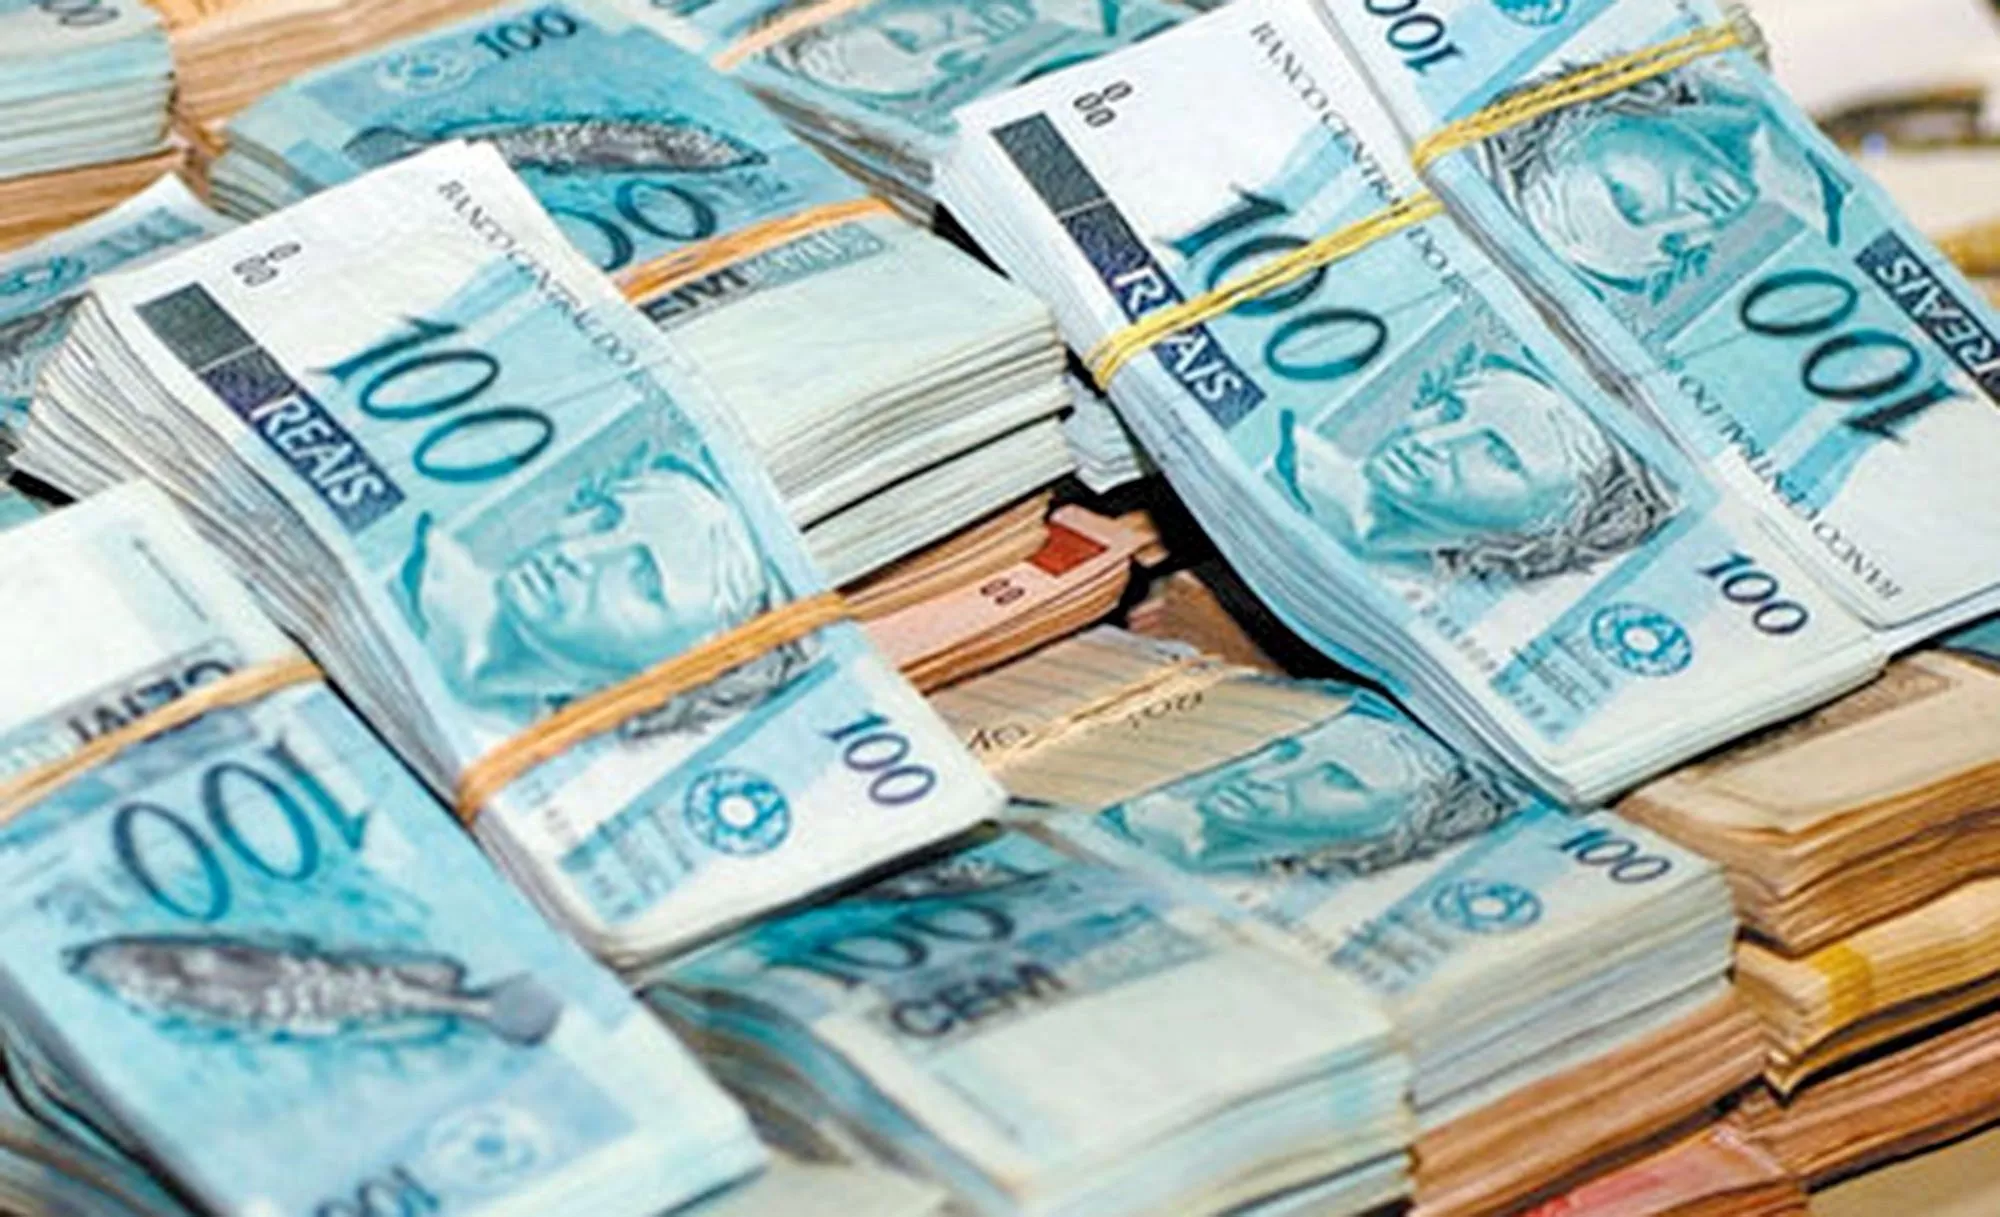 Brasileiros têm R$8 BILHÕES DE REAIS esquecidos nos bancos; Banco Central lança ferramenta para achar esse dinheiro